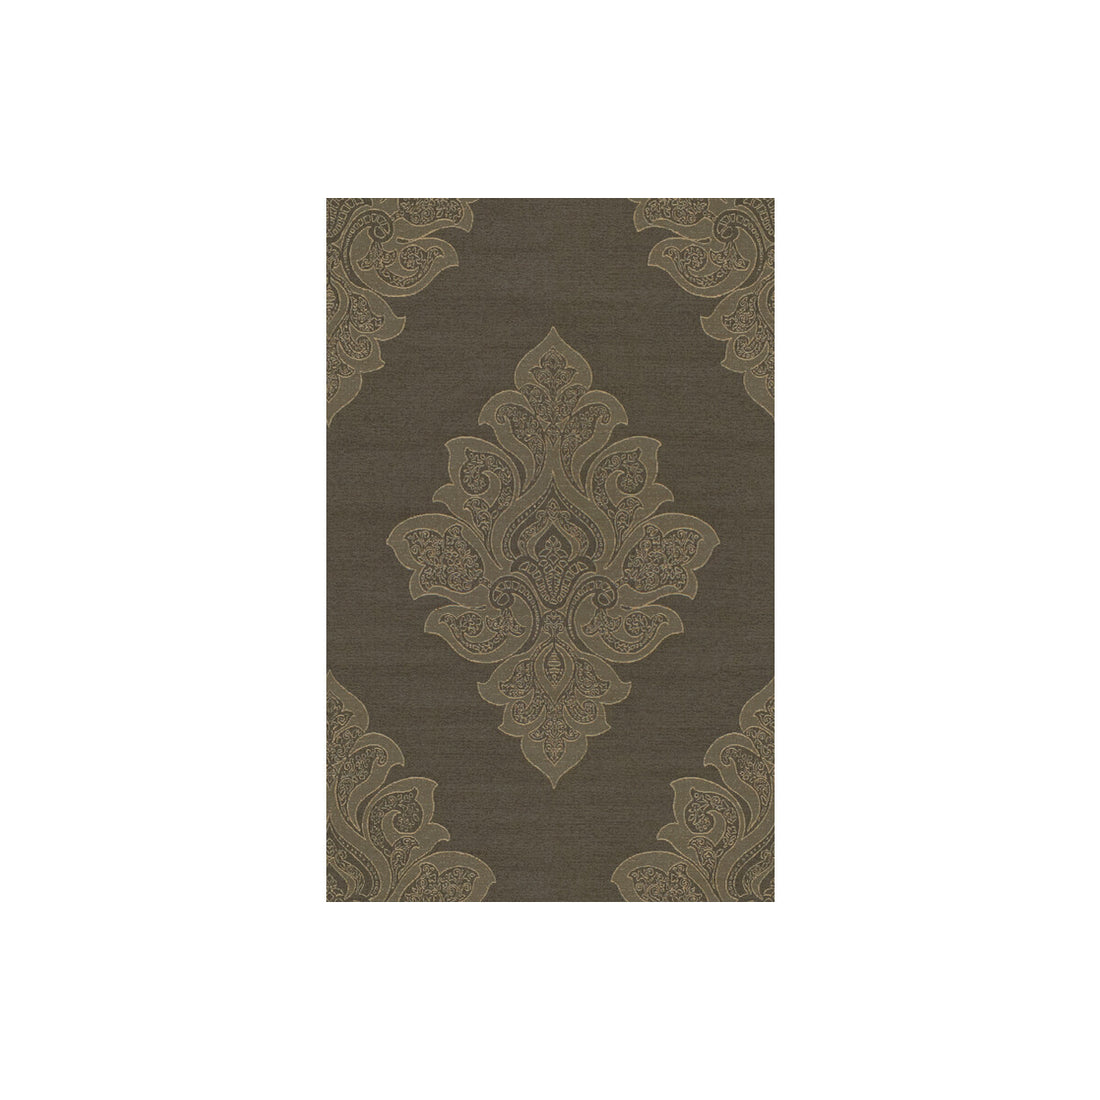 Kravet Design fabric in 3850-52 color - pattern 3850.52.0 - by Kravet Design